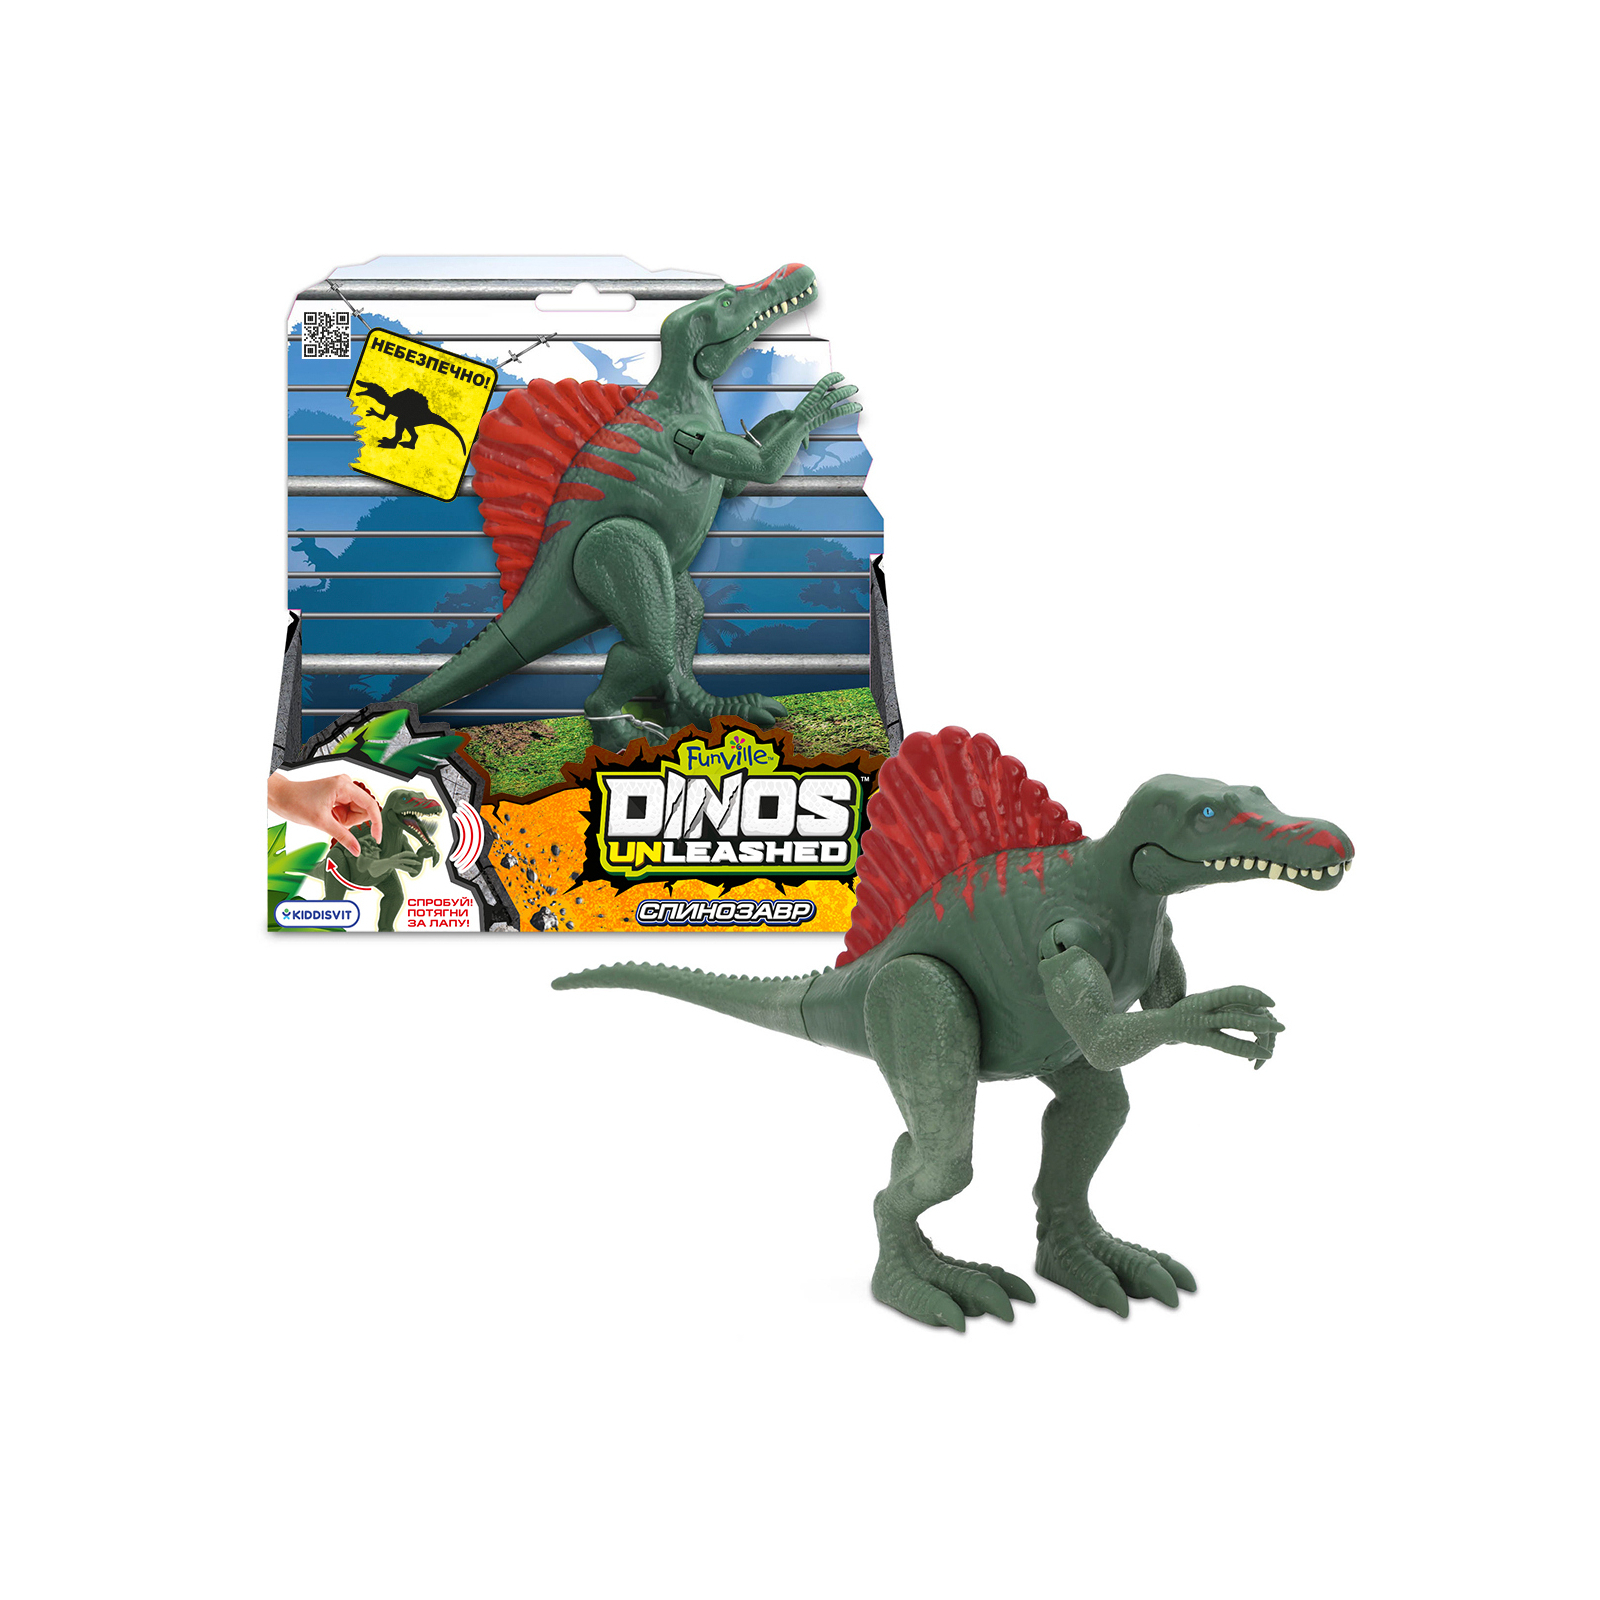 Интерактивная игрушка Dinos Unleashed серии Realistic S2 – Спинозавр (31123S2) изображение 2